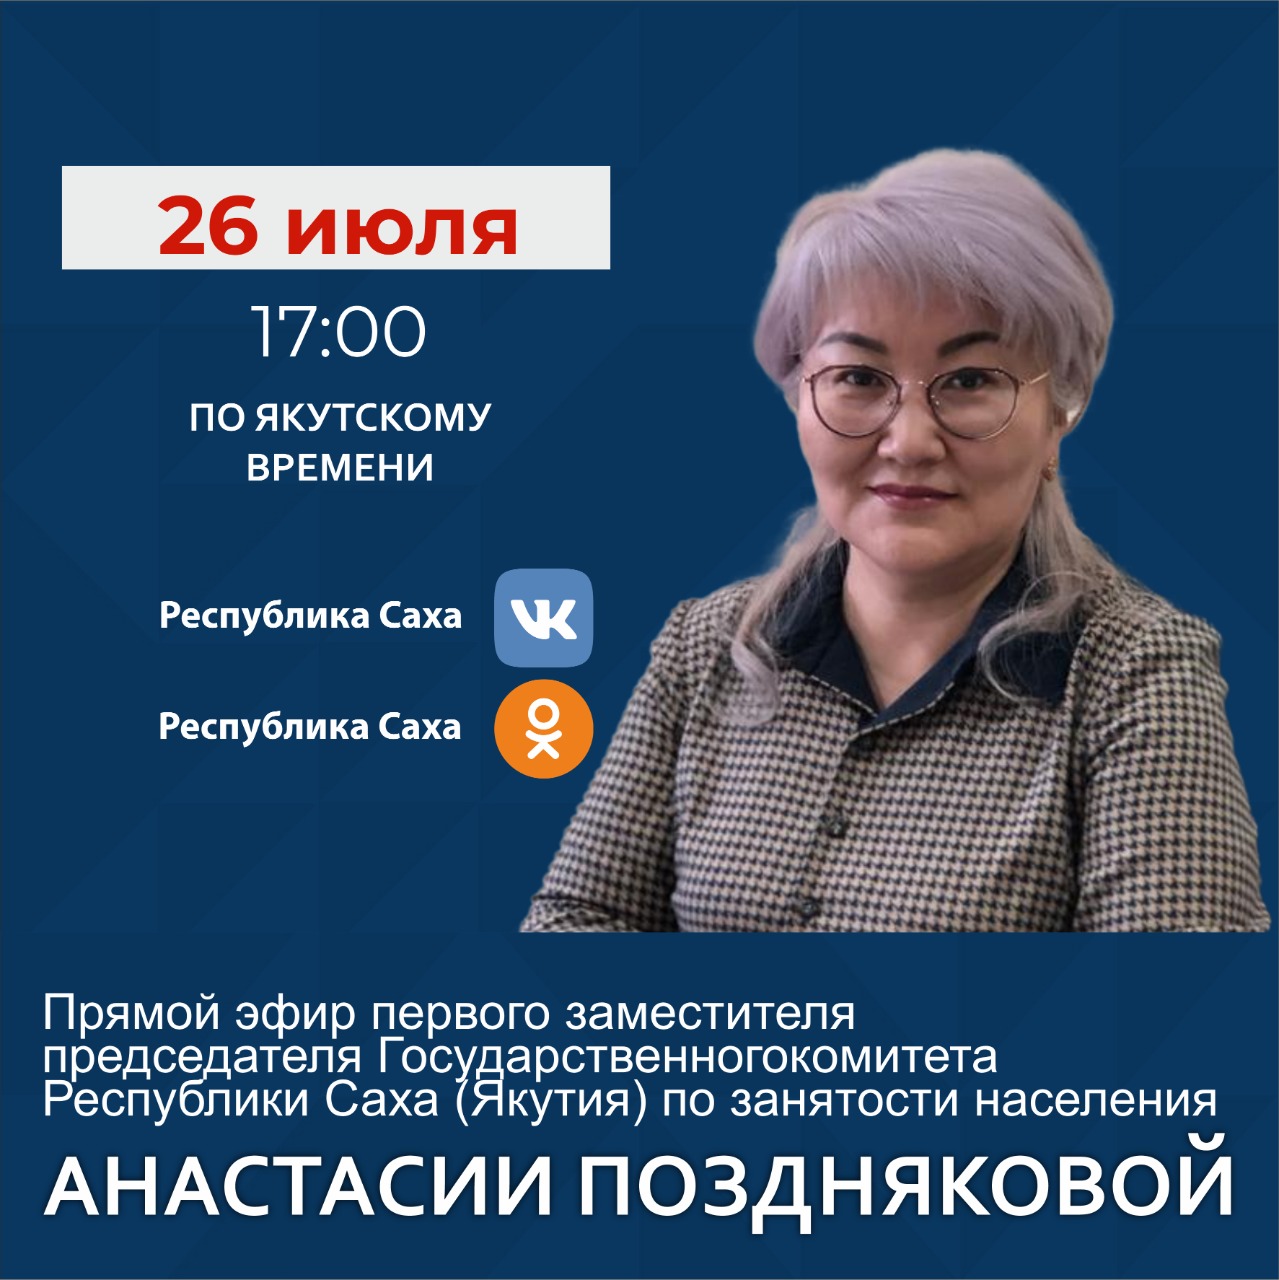 Зампред госкомитета Якутии по занятости населения проведет прямой эфир в соцсетях